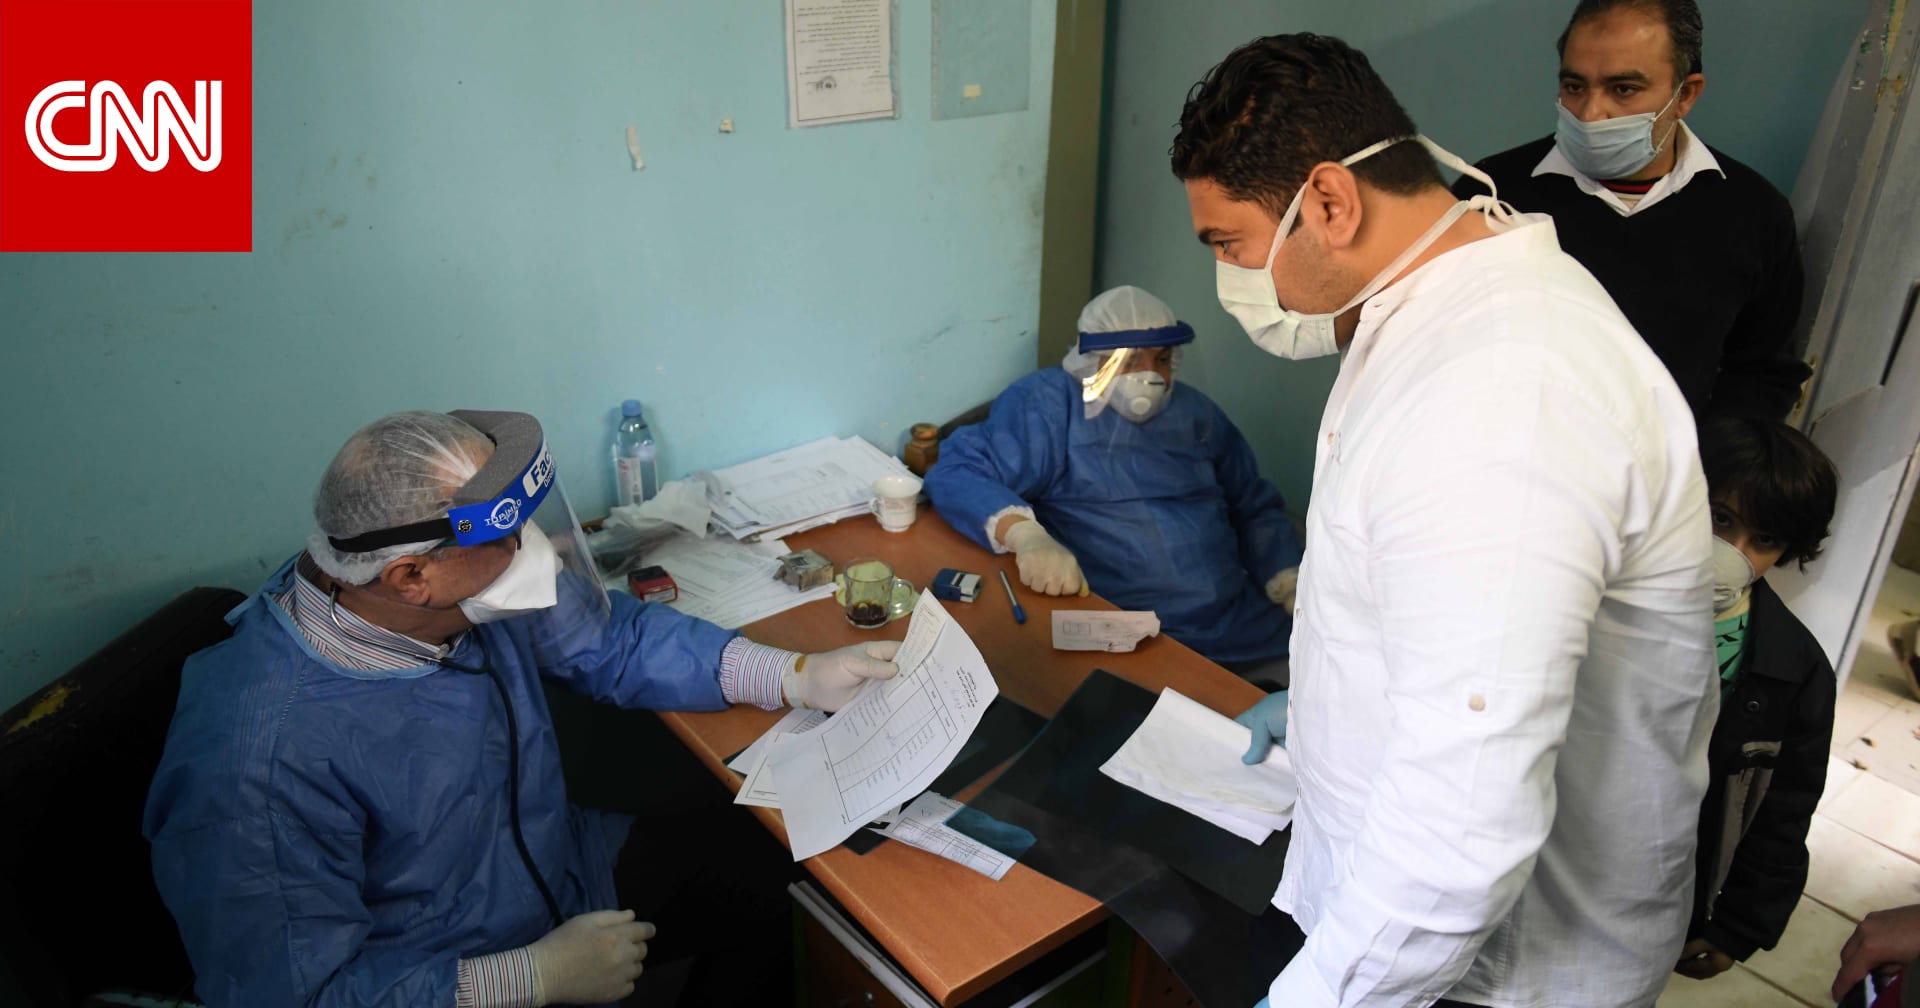 مصر تبدأ حقن مصابي فيروس كورونا ببلازما المتعافين لعلاج الحالات الحرجة - CNN Arabic